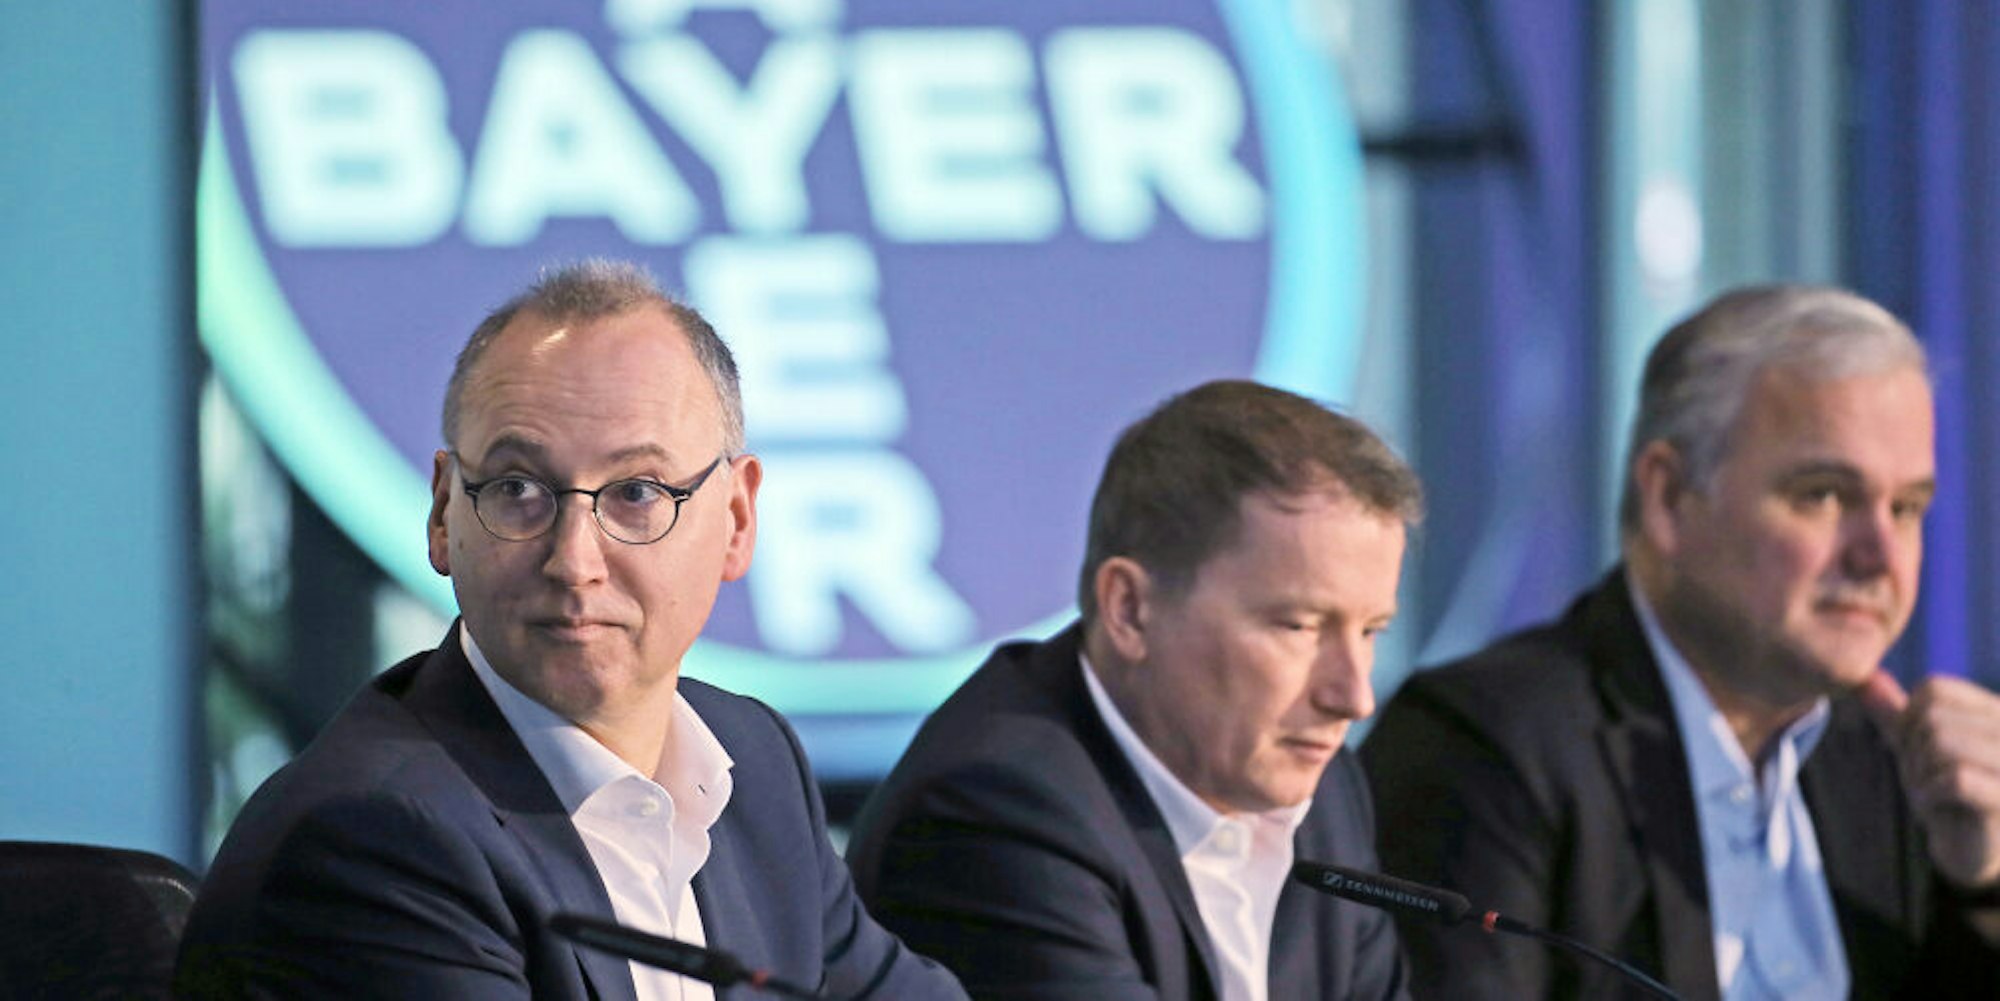 Werner Baumann bleibt an der Spitze von Bayer.